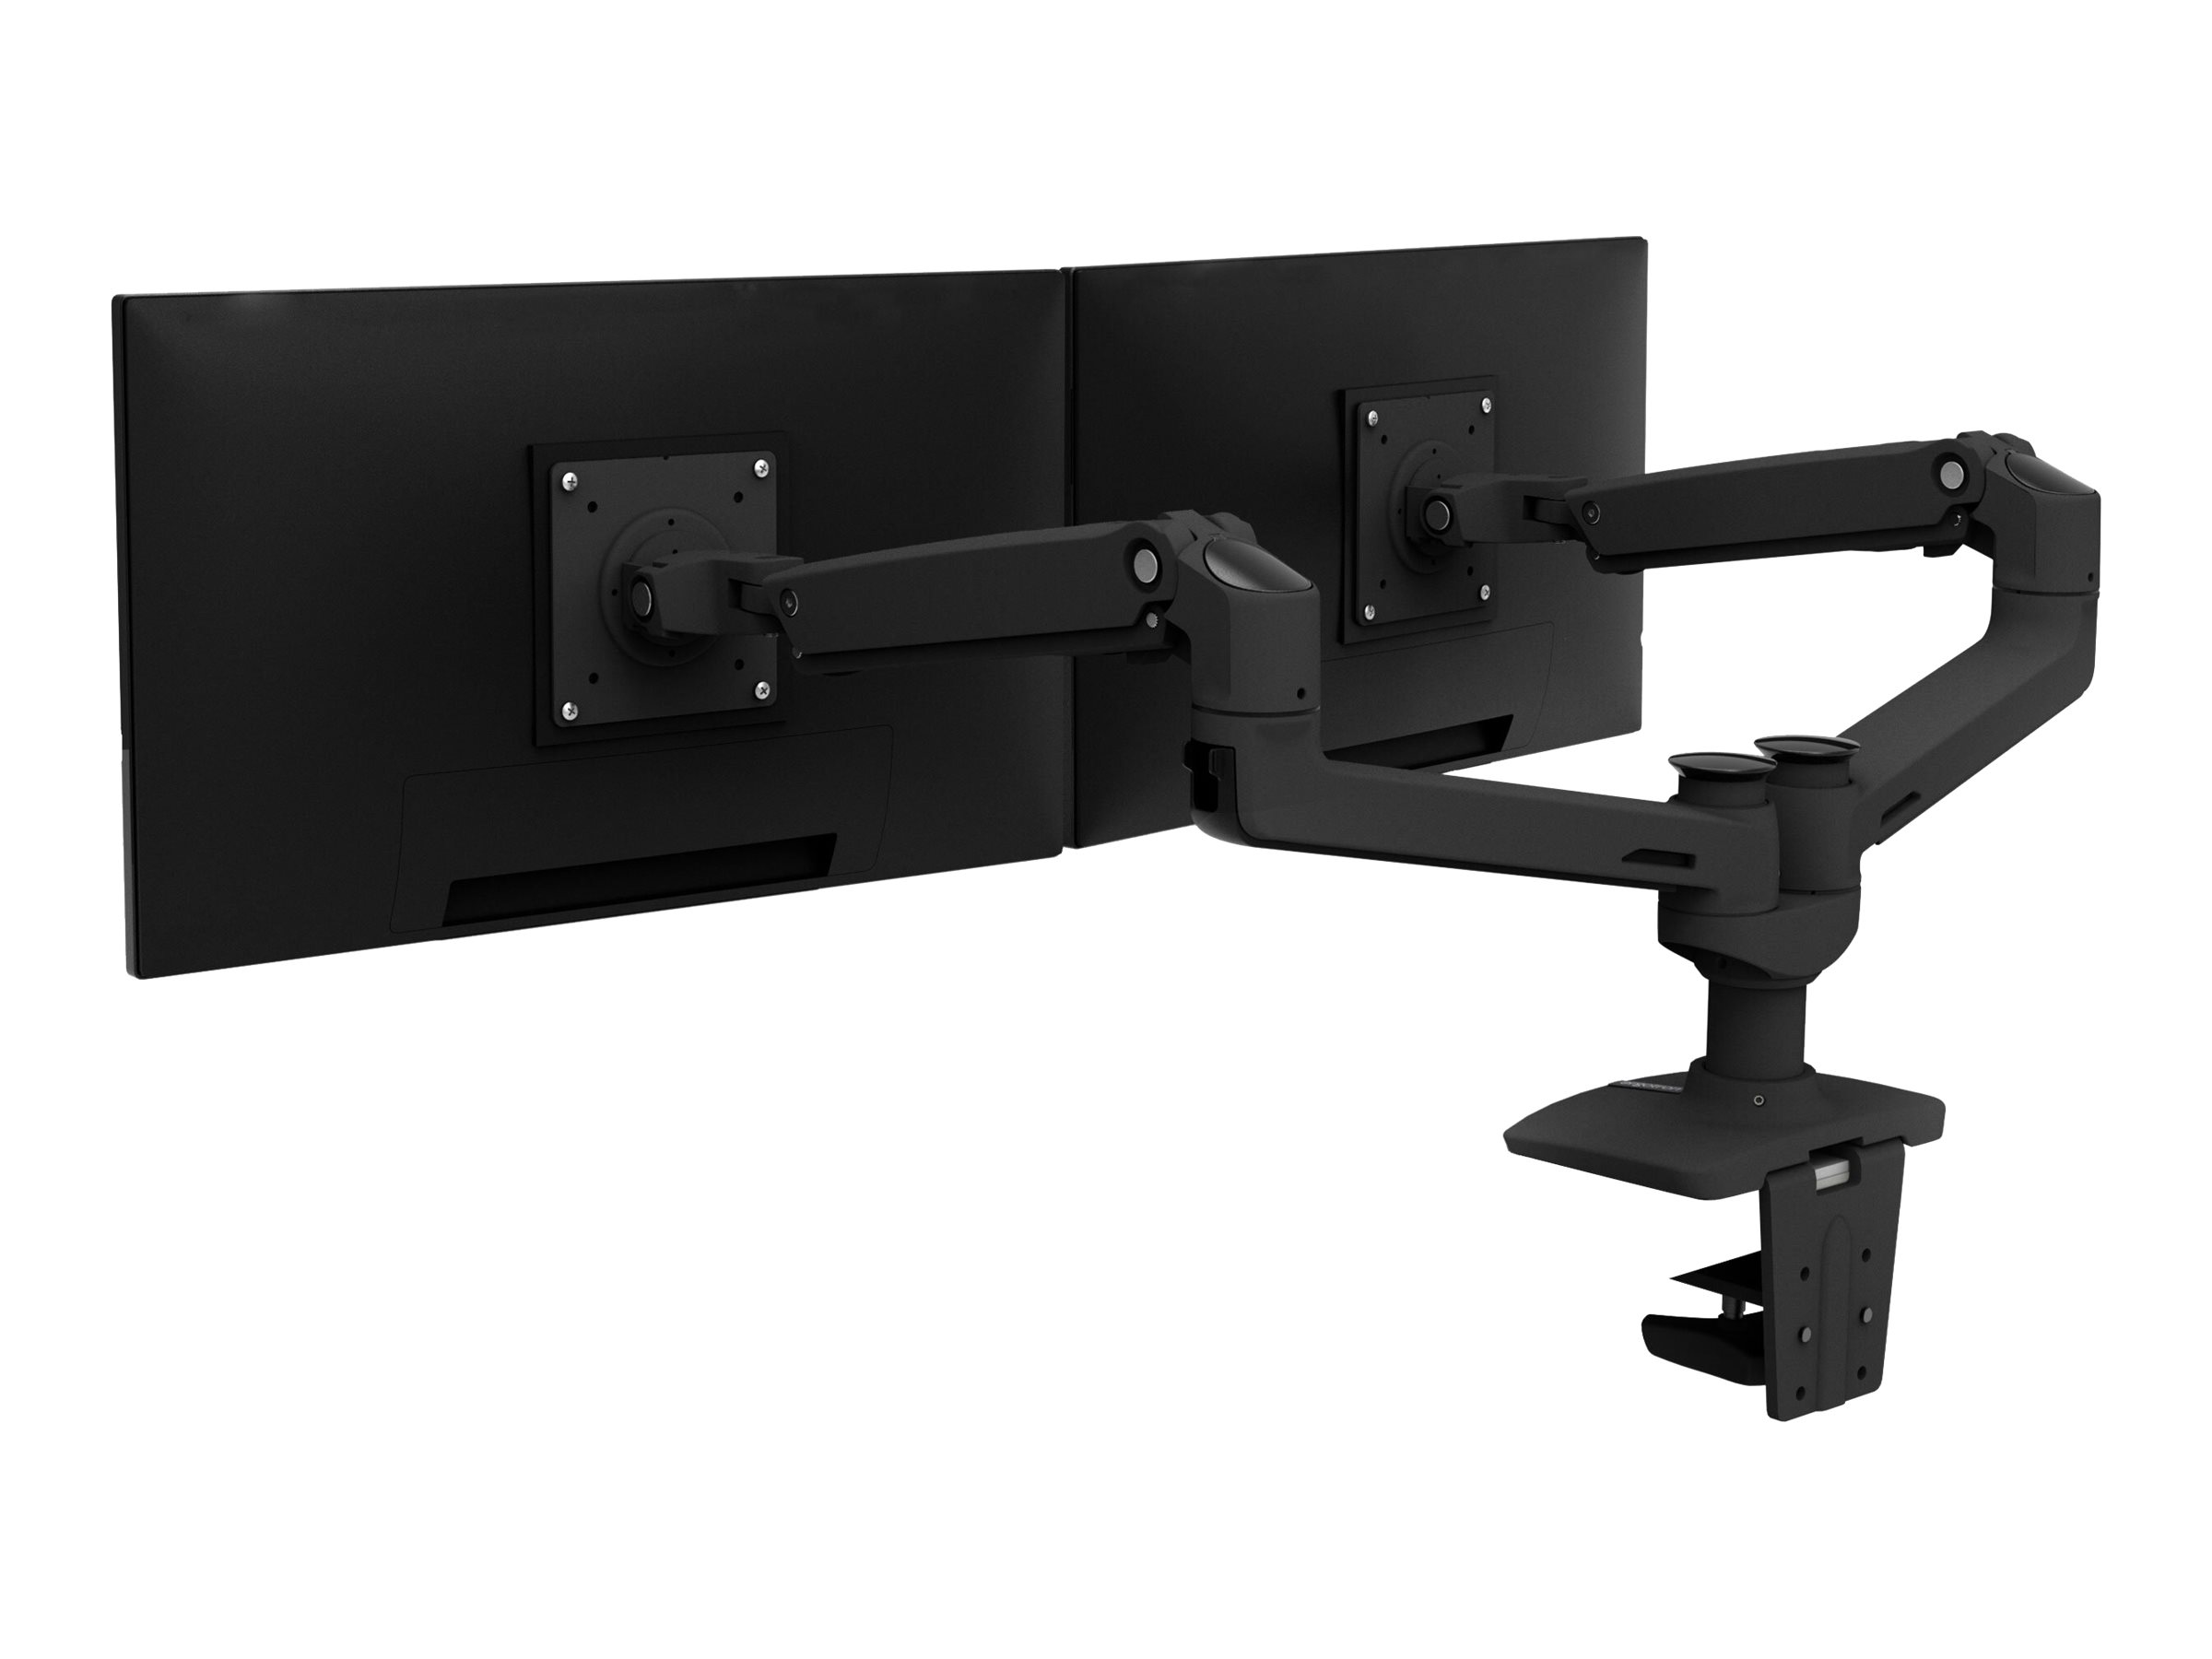 Ergotron LX Dual Side-by-Side Arm - Befestigungskit (Spannbefestigung für Tisch, Tischplattenbohrung, Stange, 2 Gelenkarme, T-Halterung)